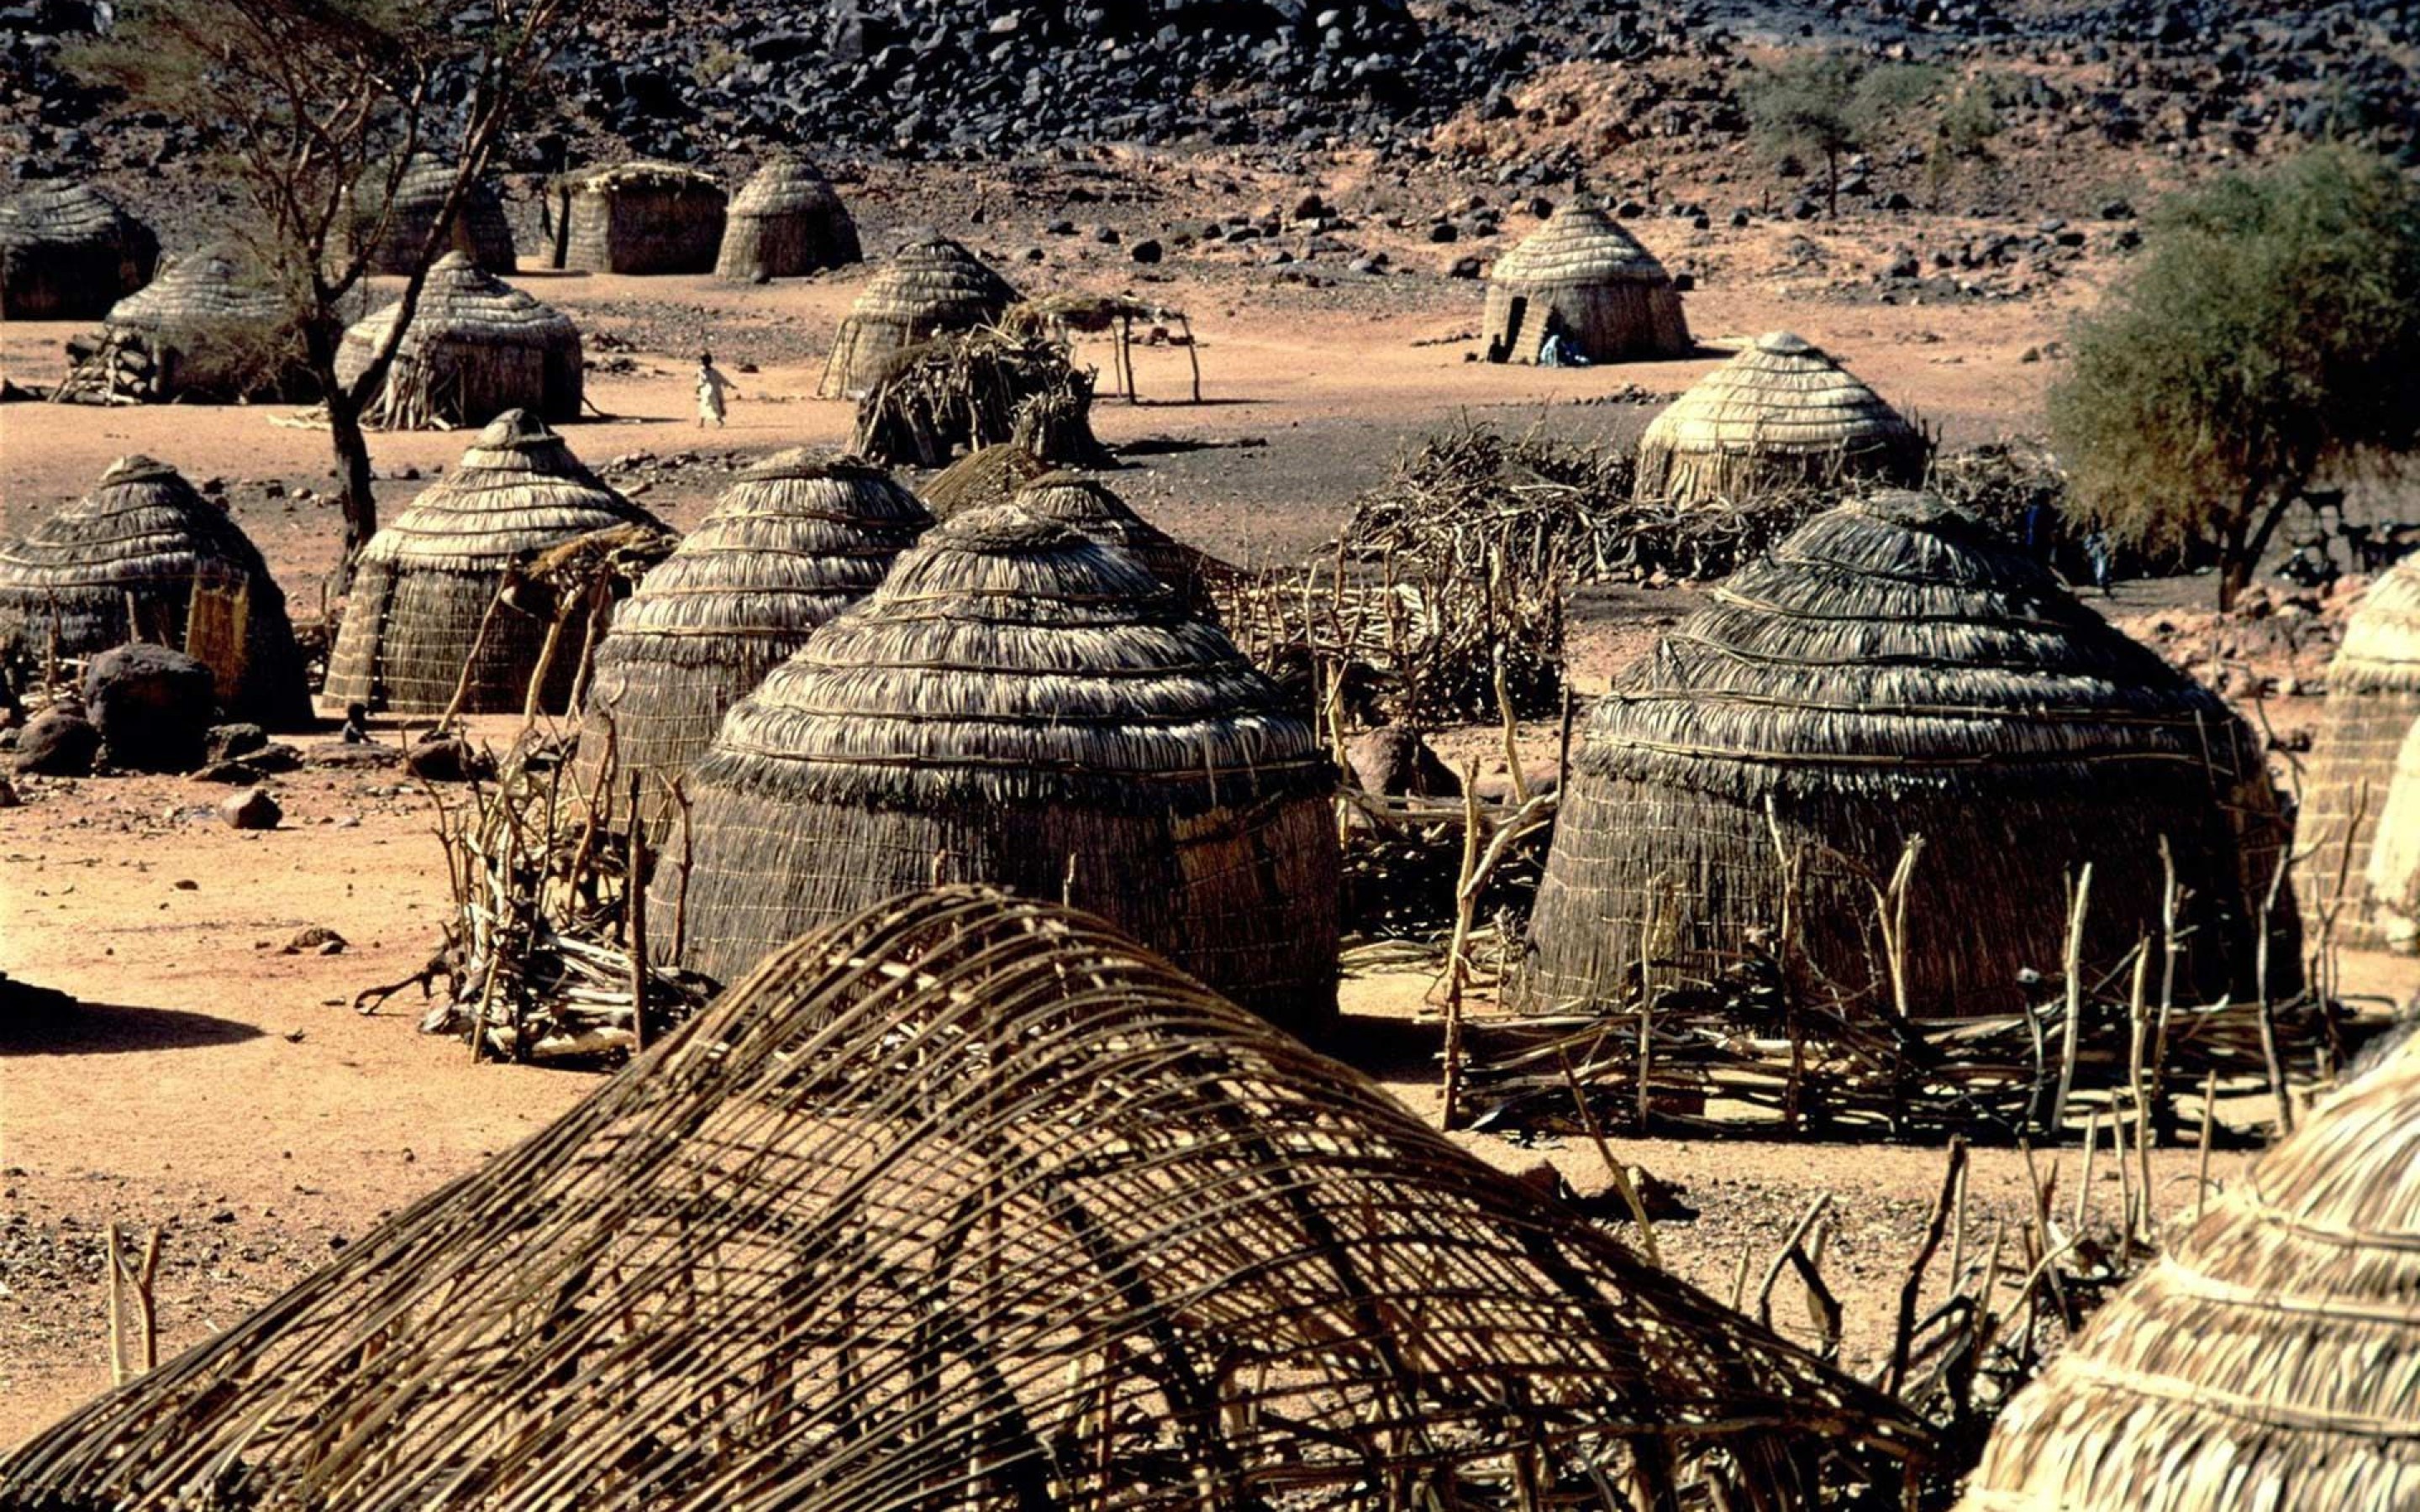 Cottage Africa, Nigerian landscapes, HD wallpapers, Desktop backgrounds, 2880x1800 HD Desktop